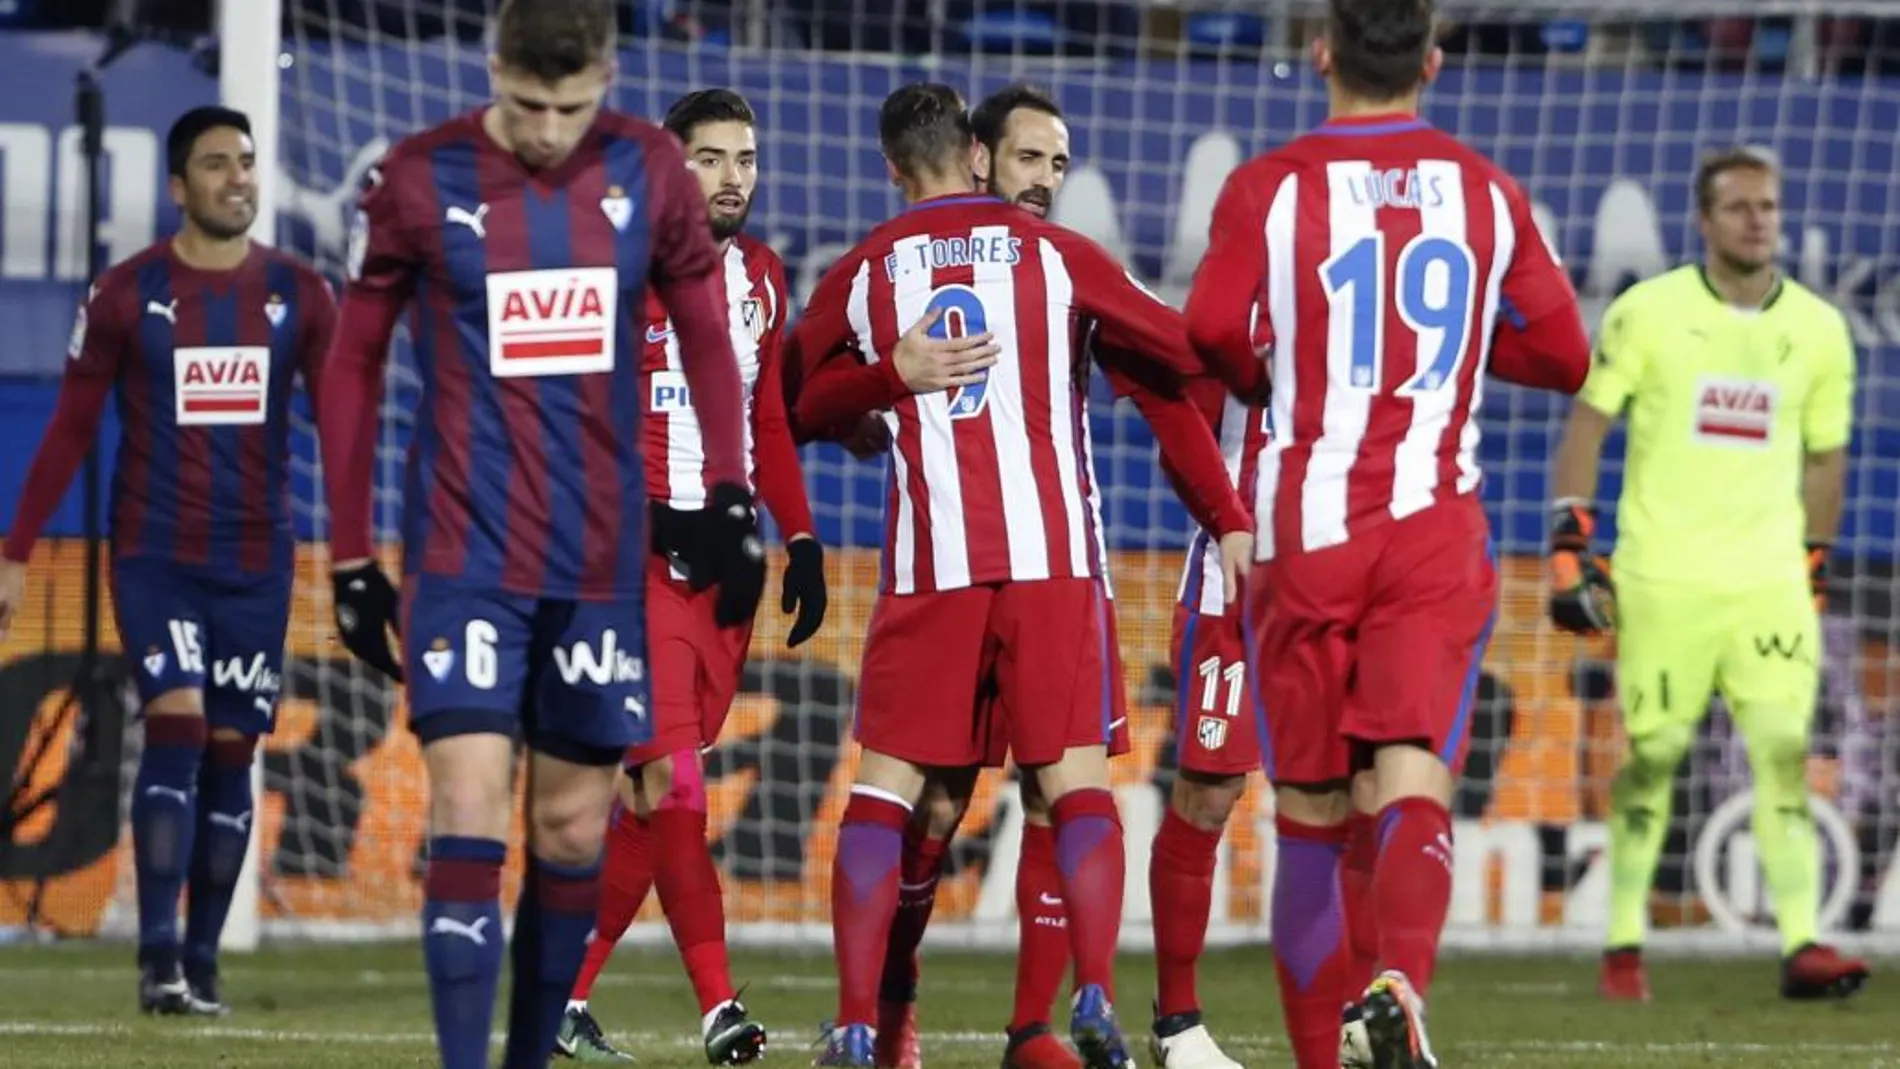 El defensa del Atlético de Madrid Juanfran Torres (2d) celebra con sus compañeros el gol marcado, el segundo del equipo frente al Eibar